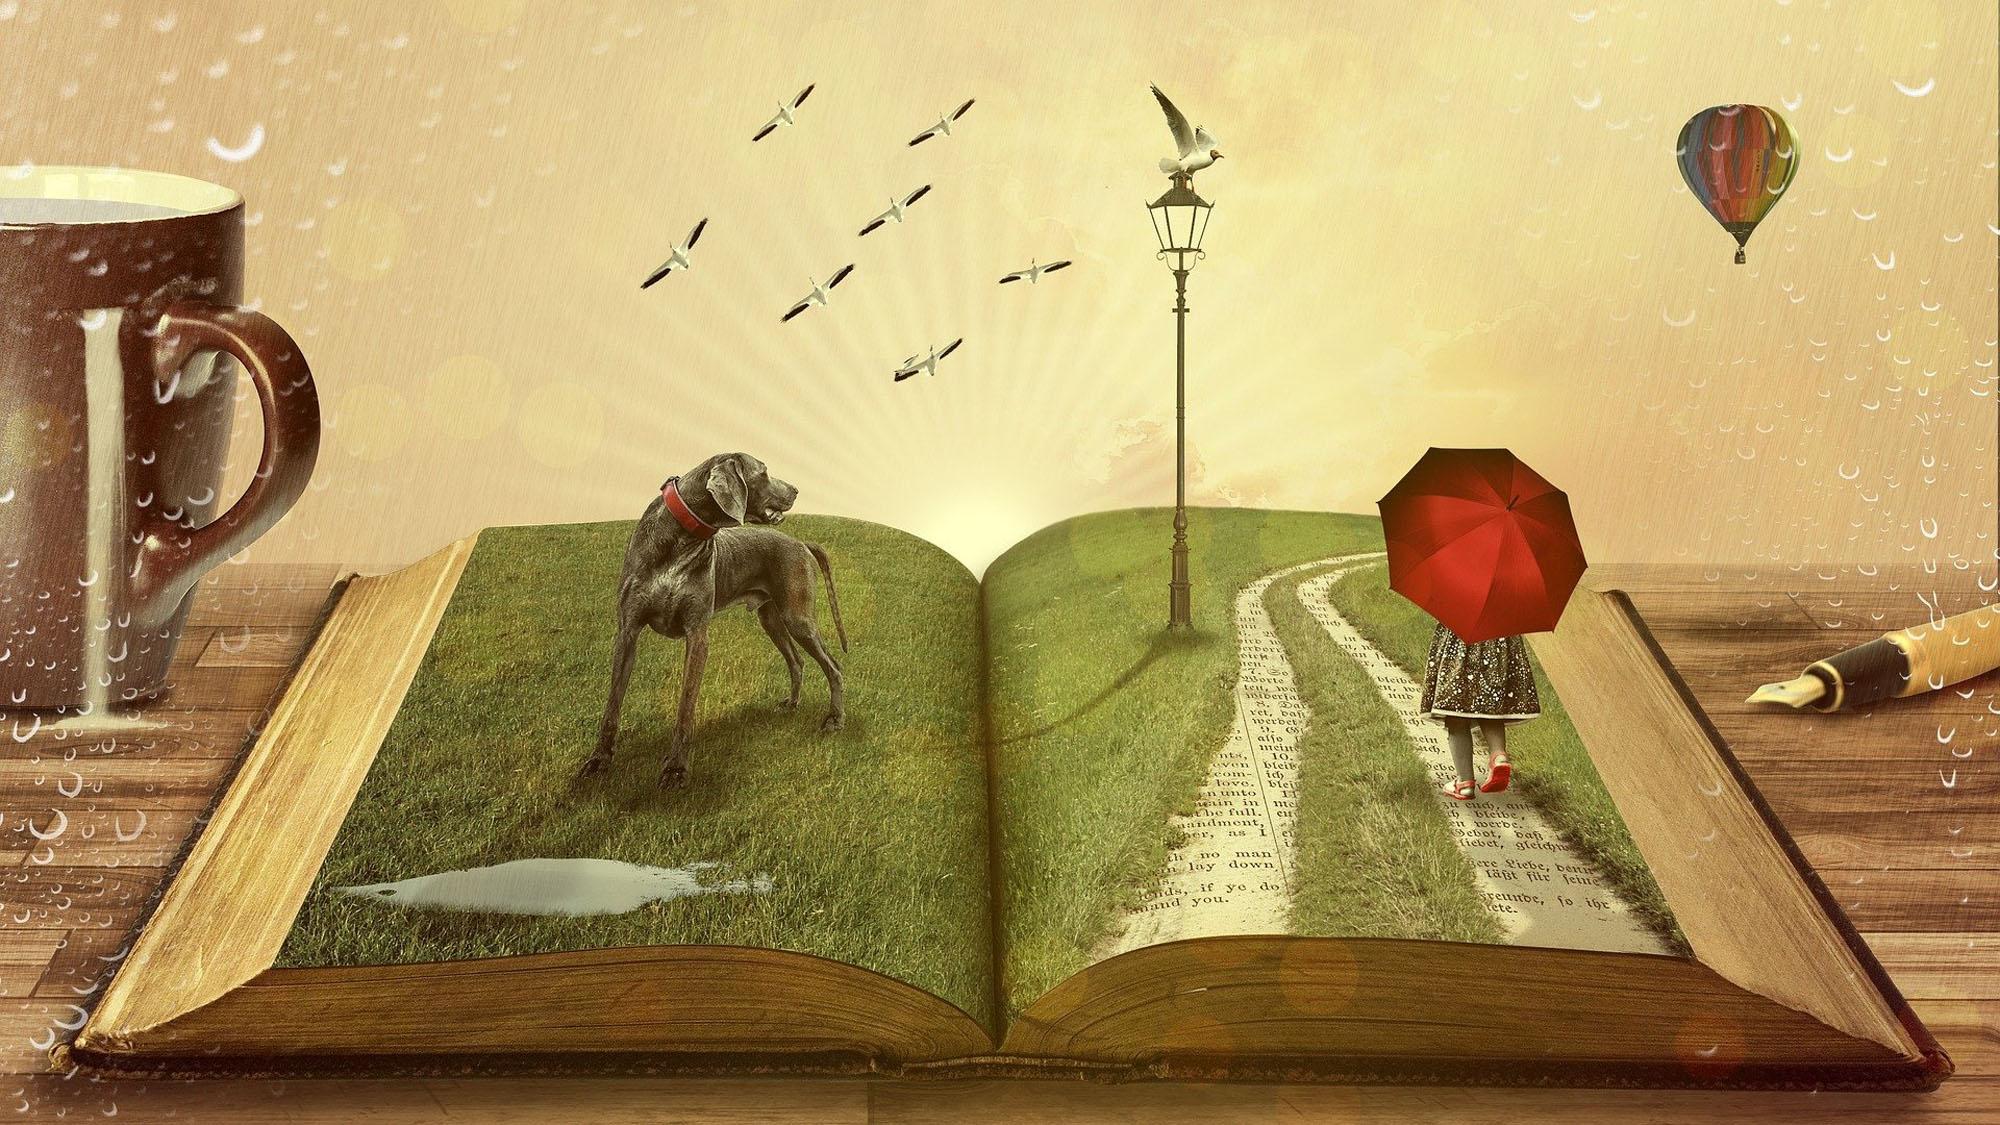 Op de linkerpagina van het boek staat een grote grijze hond. Rechts wandelt een meisje met een rode paraplu door een drassig grasveld.